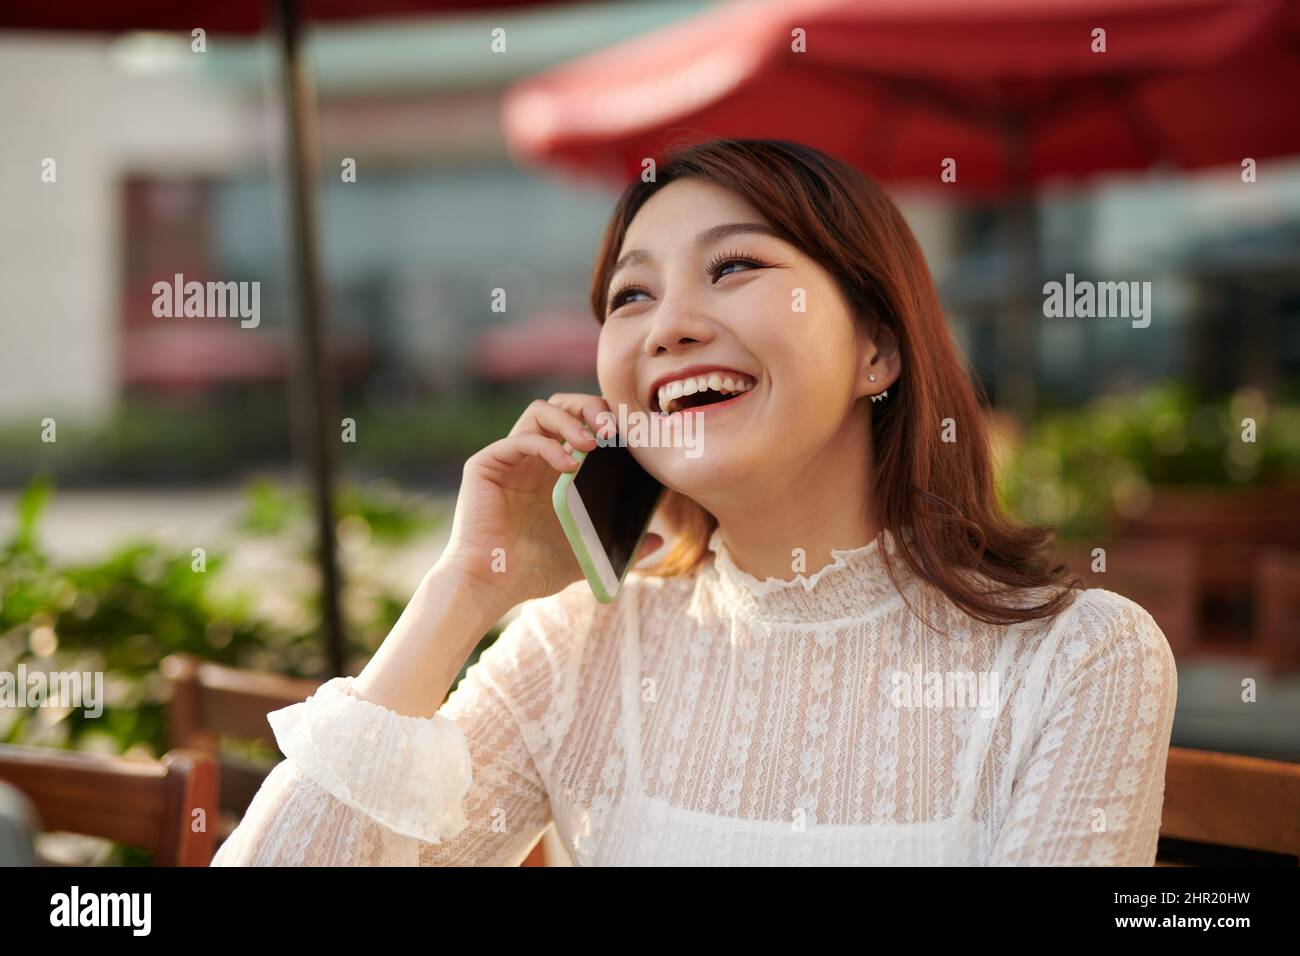 Ein Schuss von einer asiatischen Frau am Telefon sprechen Stockfoto